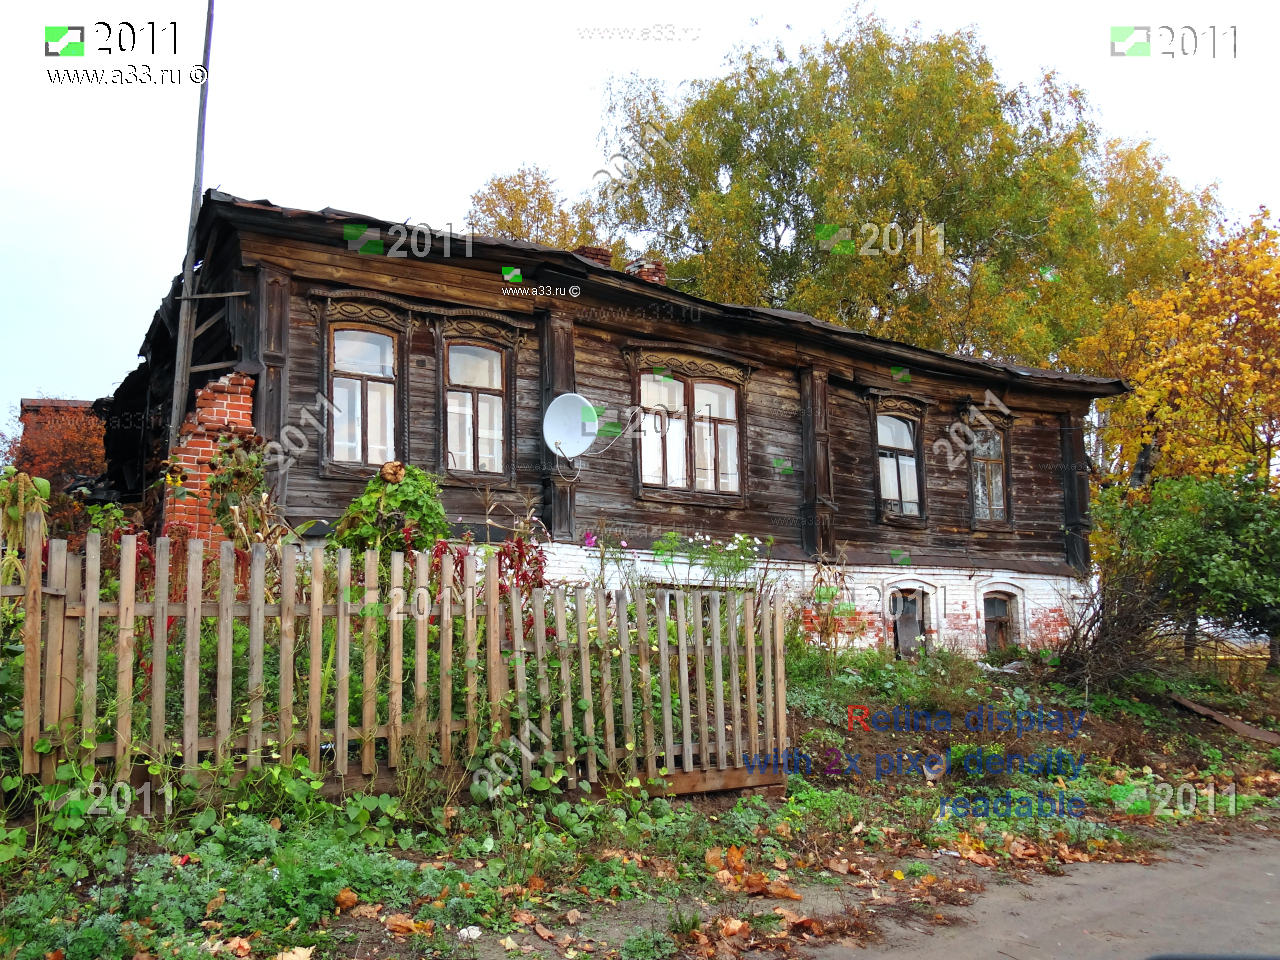 Мстёра посёлок Вязниковского района Владимирской области, фотографии, карта